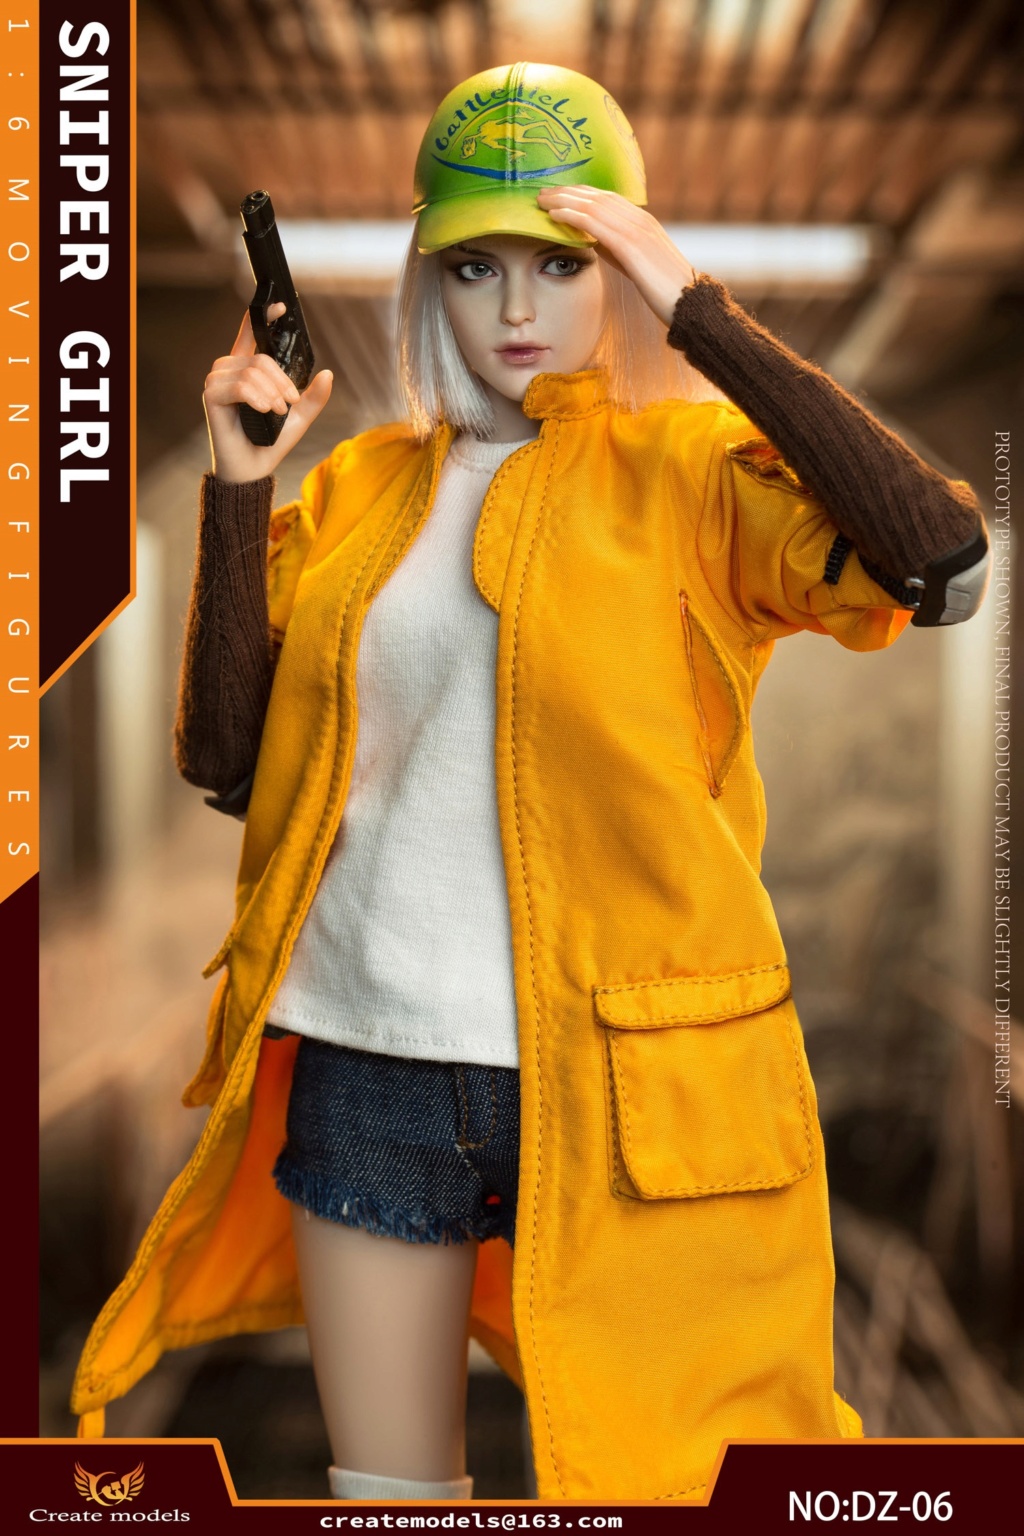 NEW PRODUCT: Createmodels: 1/6 Sniper Girl-Songbird/Lan Action Figures #DZ-05/DZ-06 18534611